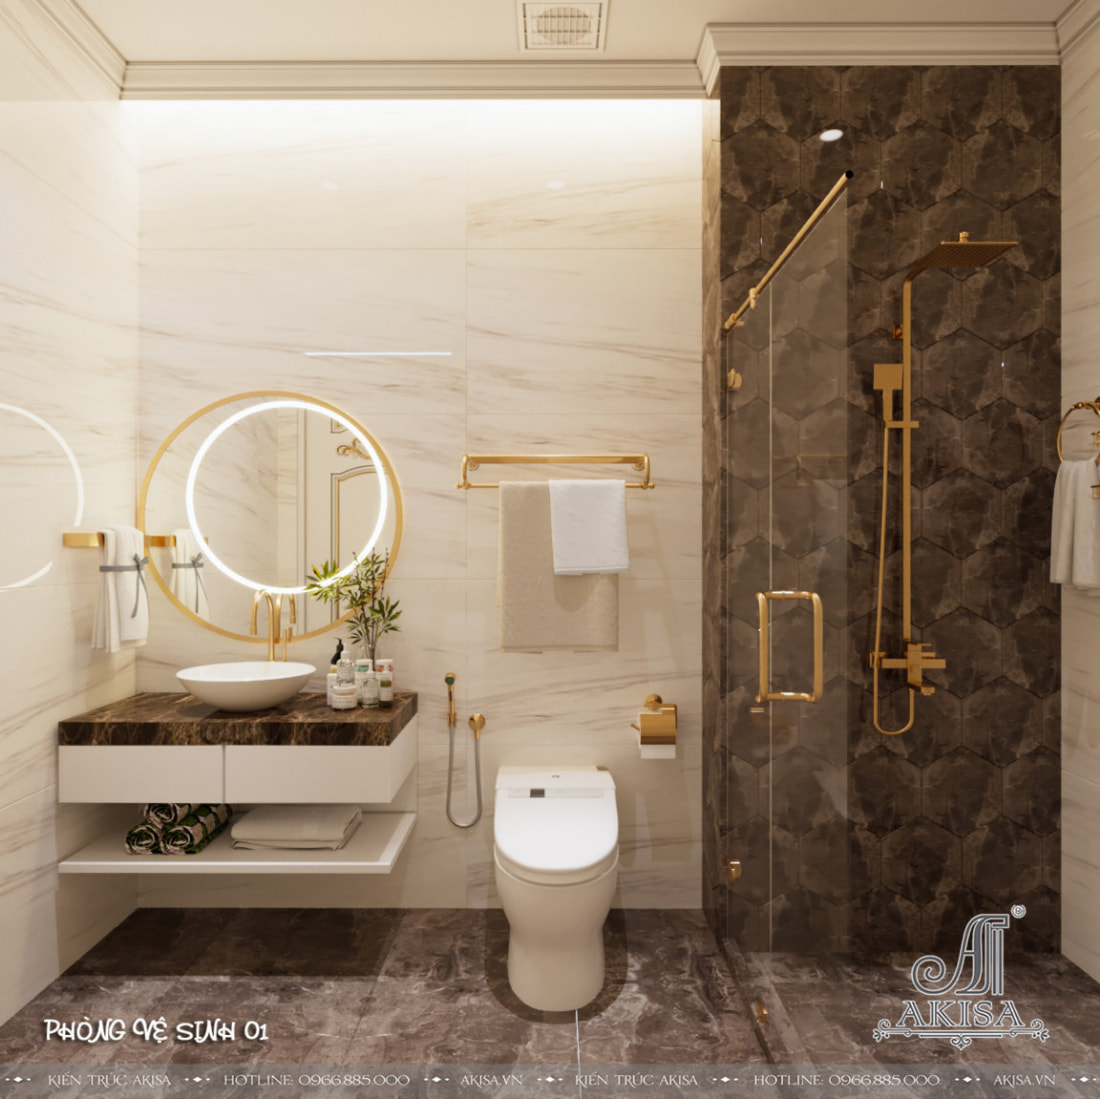 Phòng tắm tân cổ điển được bài trí khoa học, gọn gàng, sử dụng các đồ nội thất hiện đại nhưng vẫn đảm bảo được vẻ đẹp quý phái.